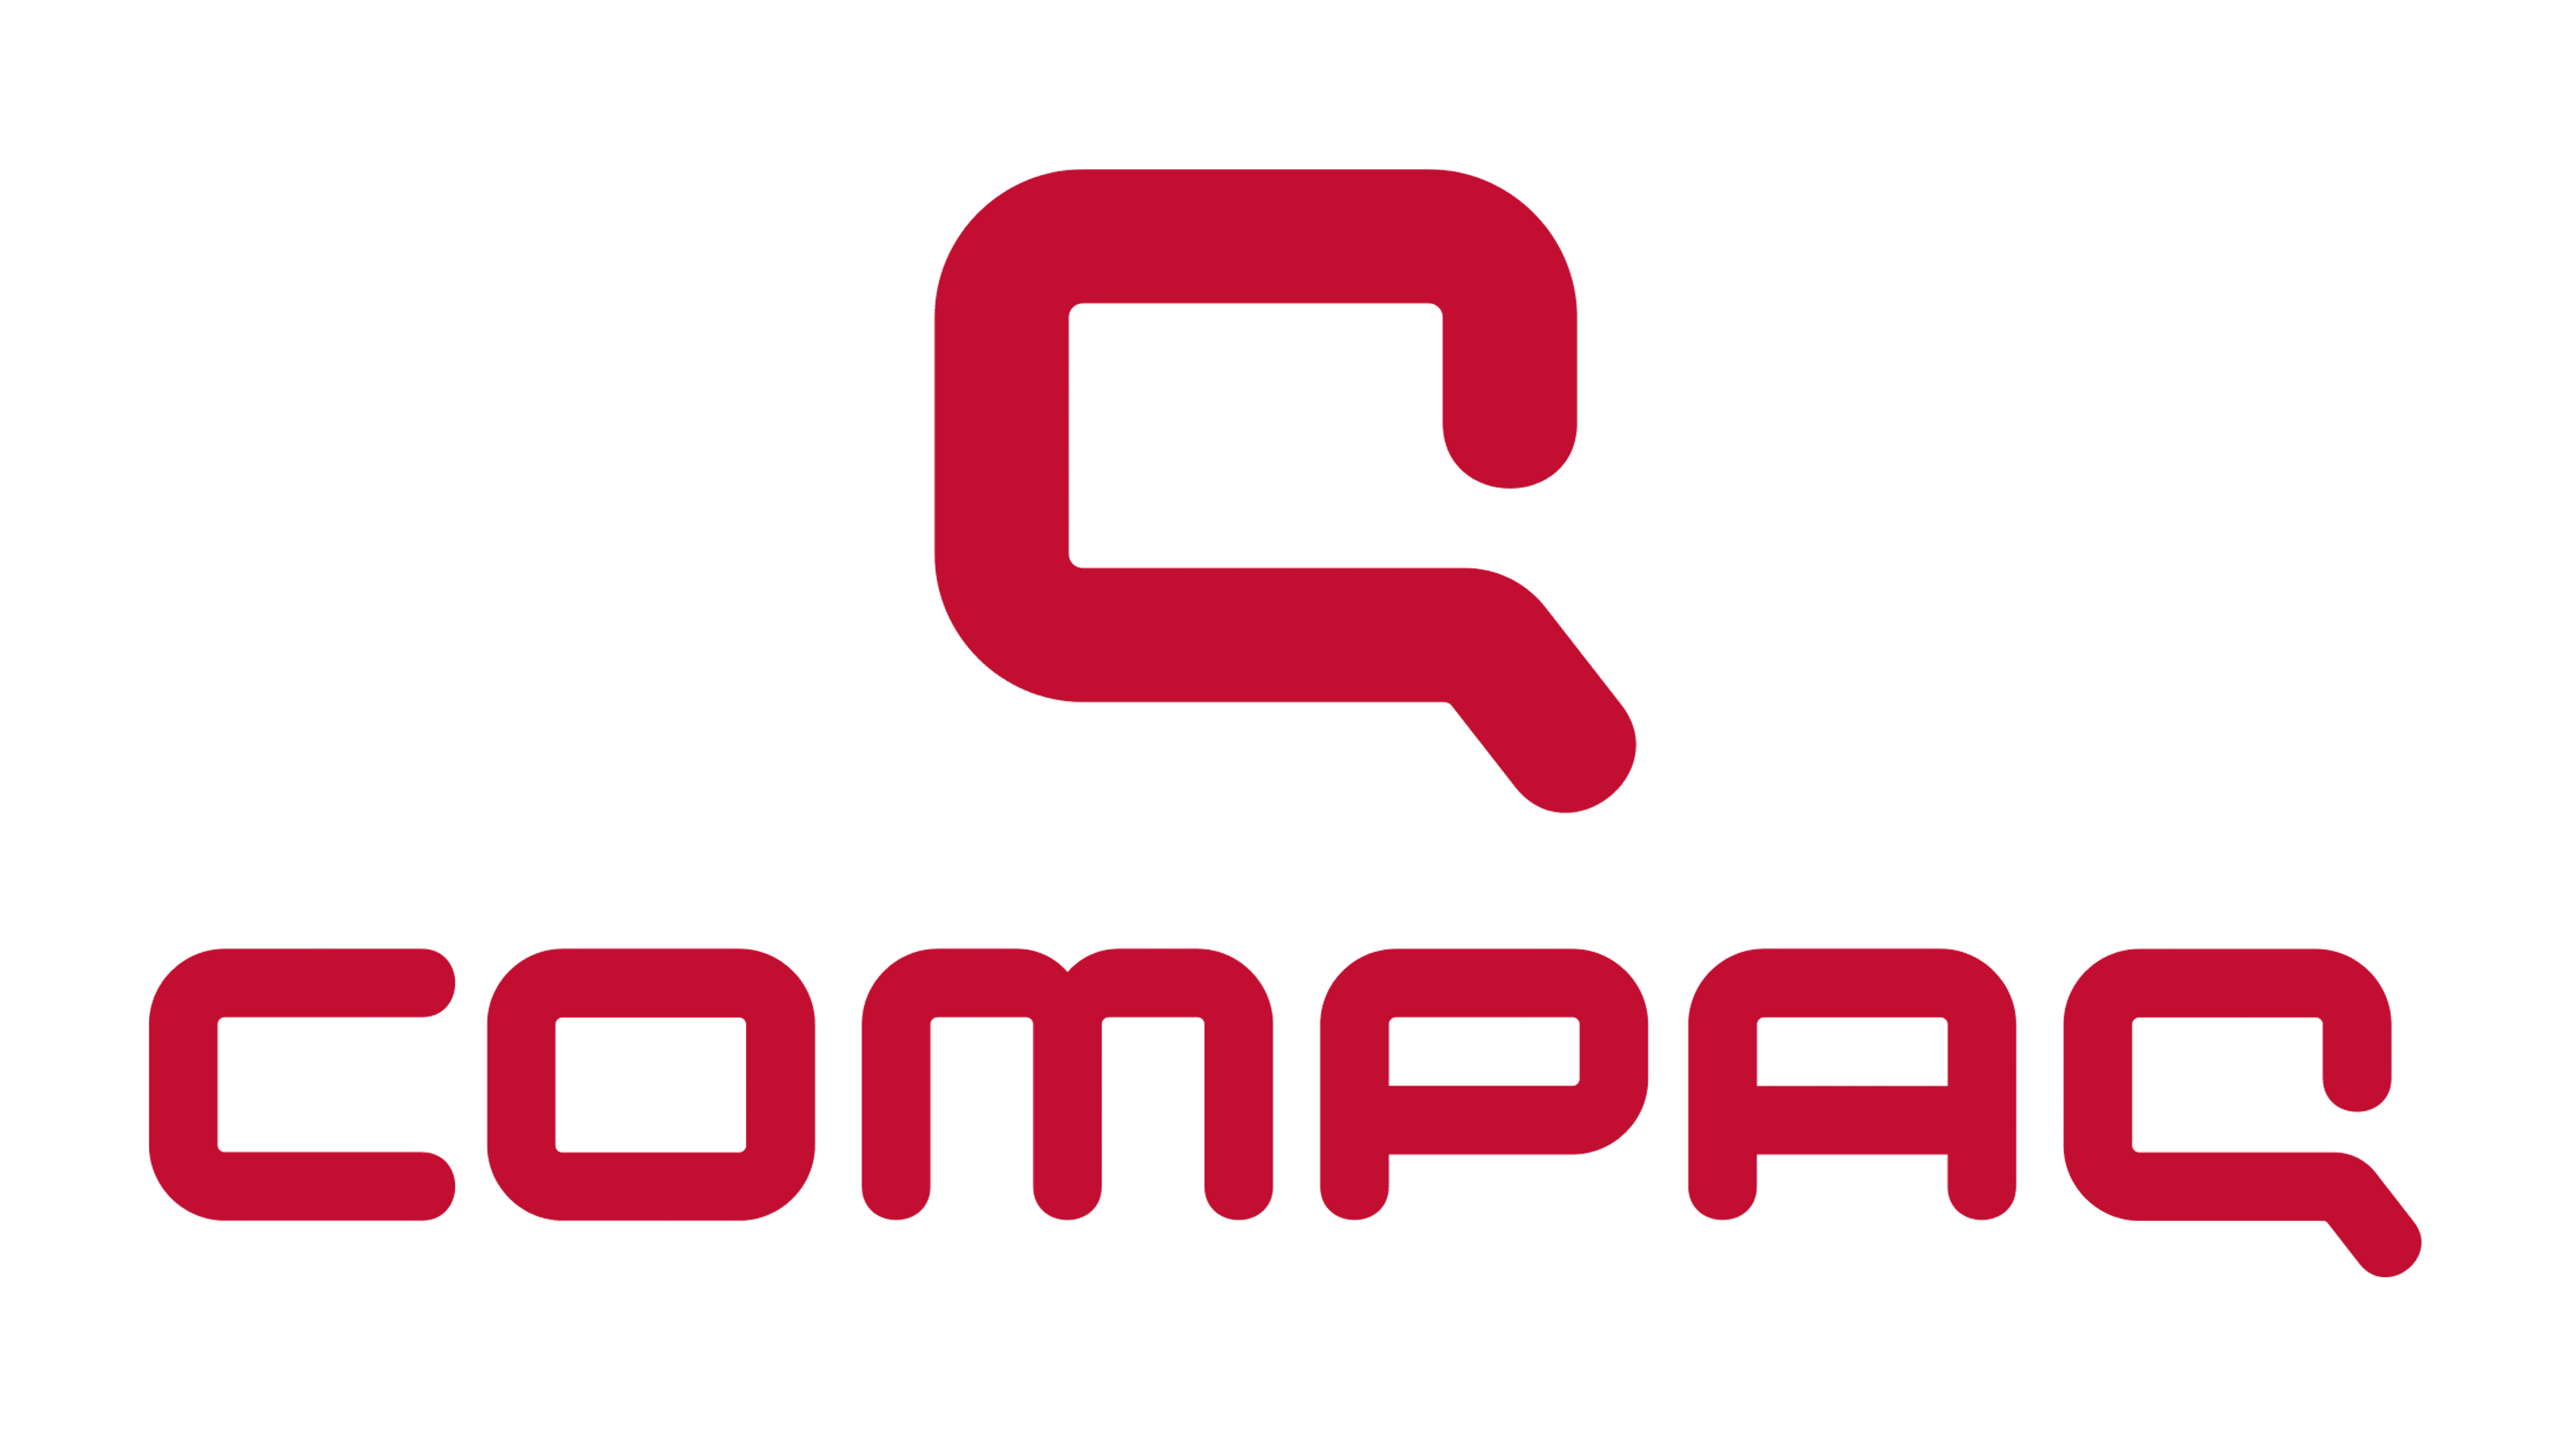 hp compaq logo